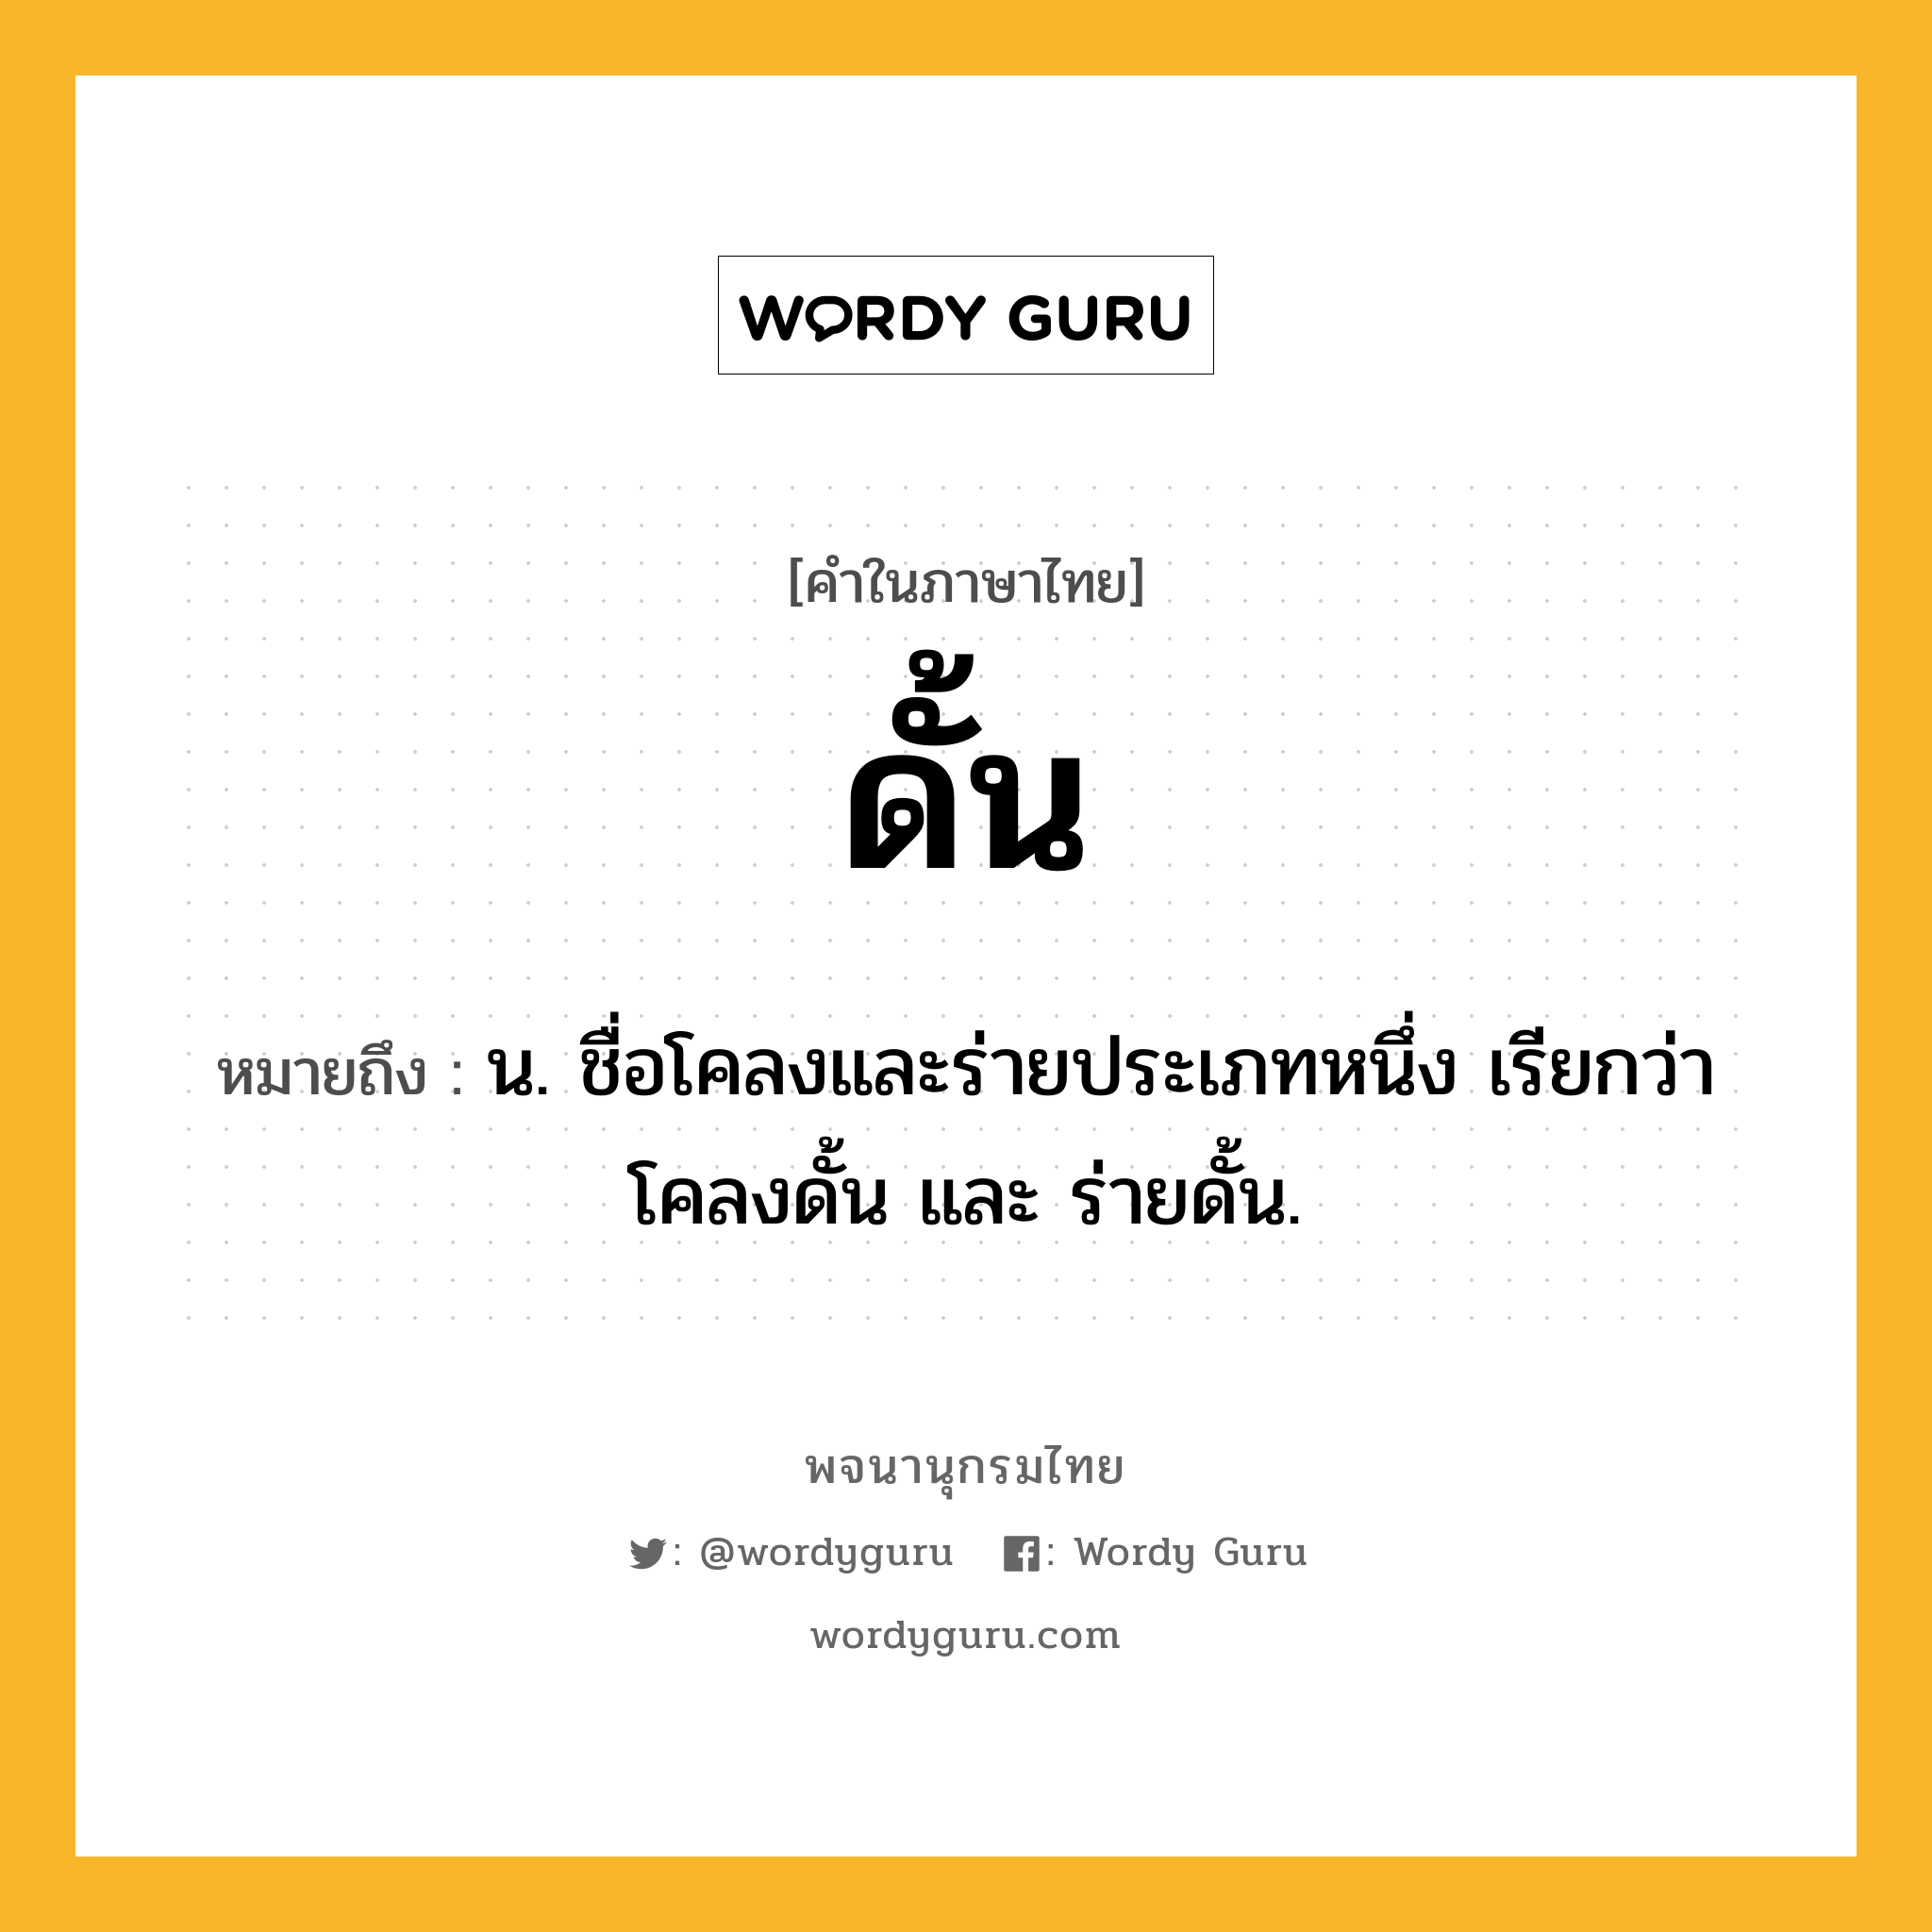 ดั้น หมายถึงอะไร?, คำในภาษาไทย ดั้น หมายถึง น. ชื่อโคลงและร่ายประเภทหนึ่ง เรียกว่า โคลงดั้น และ ร่ายดั้น.